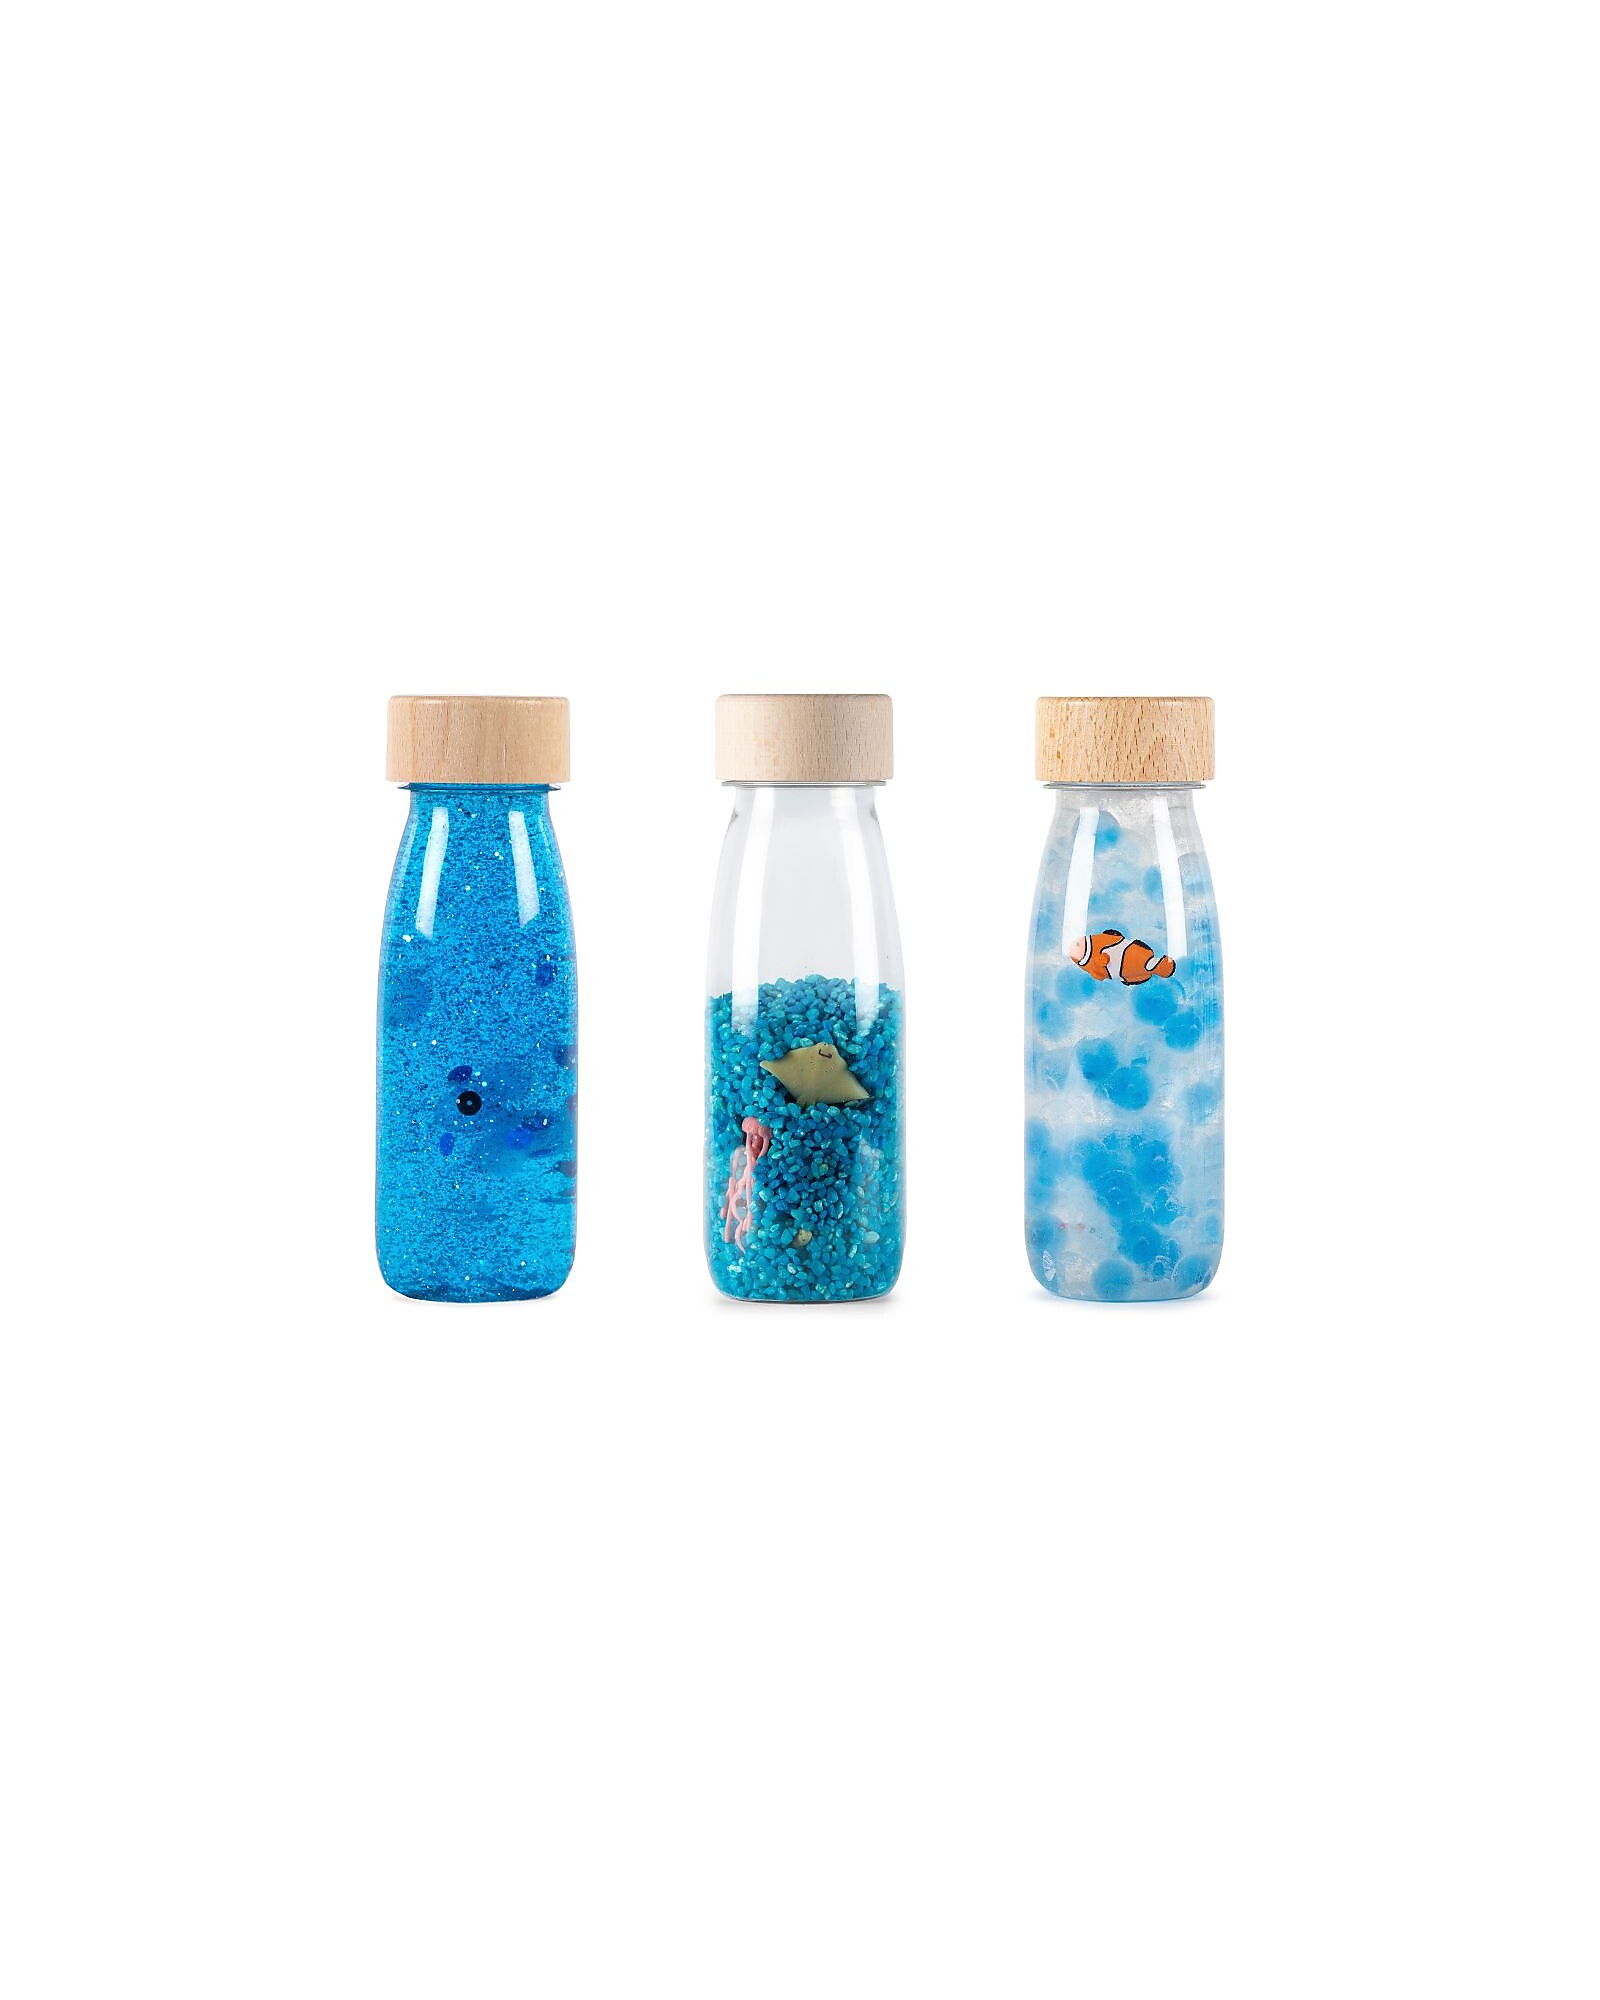 Le 8 bottiglie sensoriali più belle e creative  Kids crafts, Bottiglie  sensoriali, Artigianato bambini piccoli